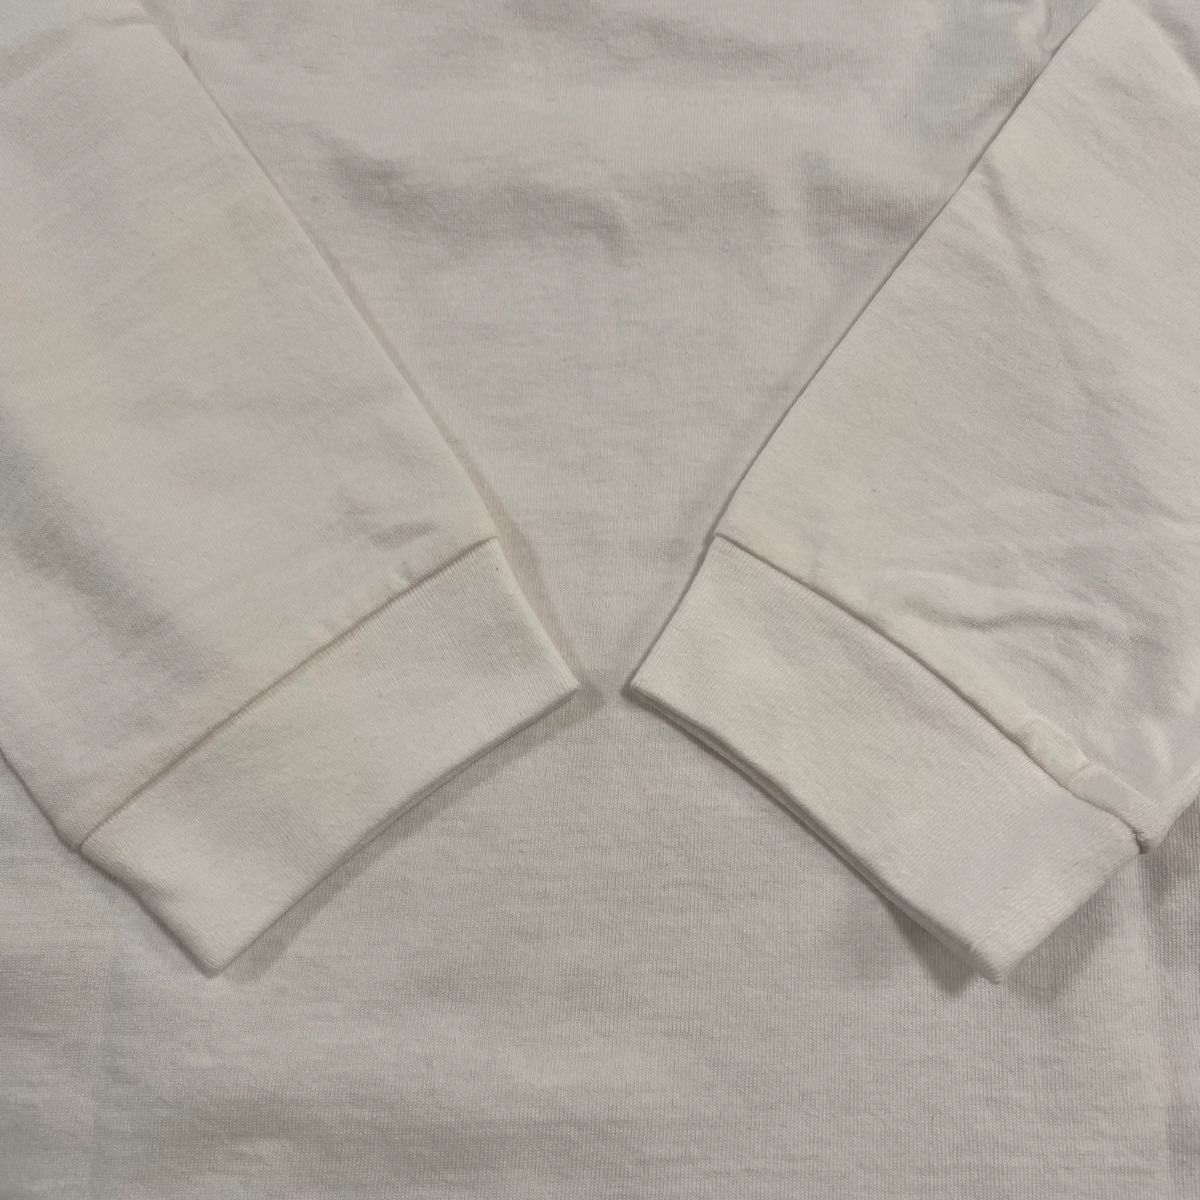 【新品】 キャロウェイ トラヴィスマシュー モック 胸ポケット ホワイト M